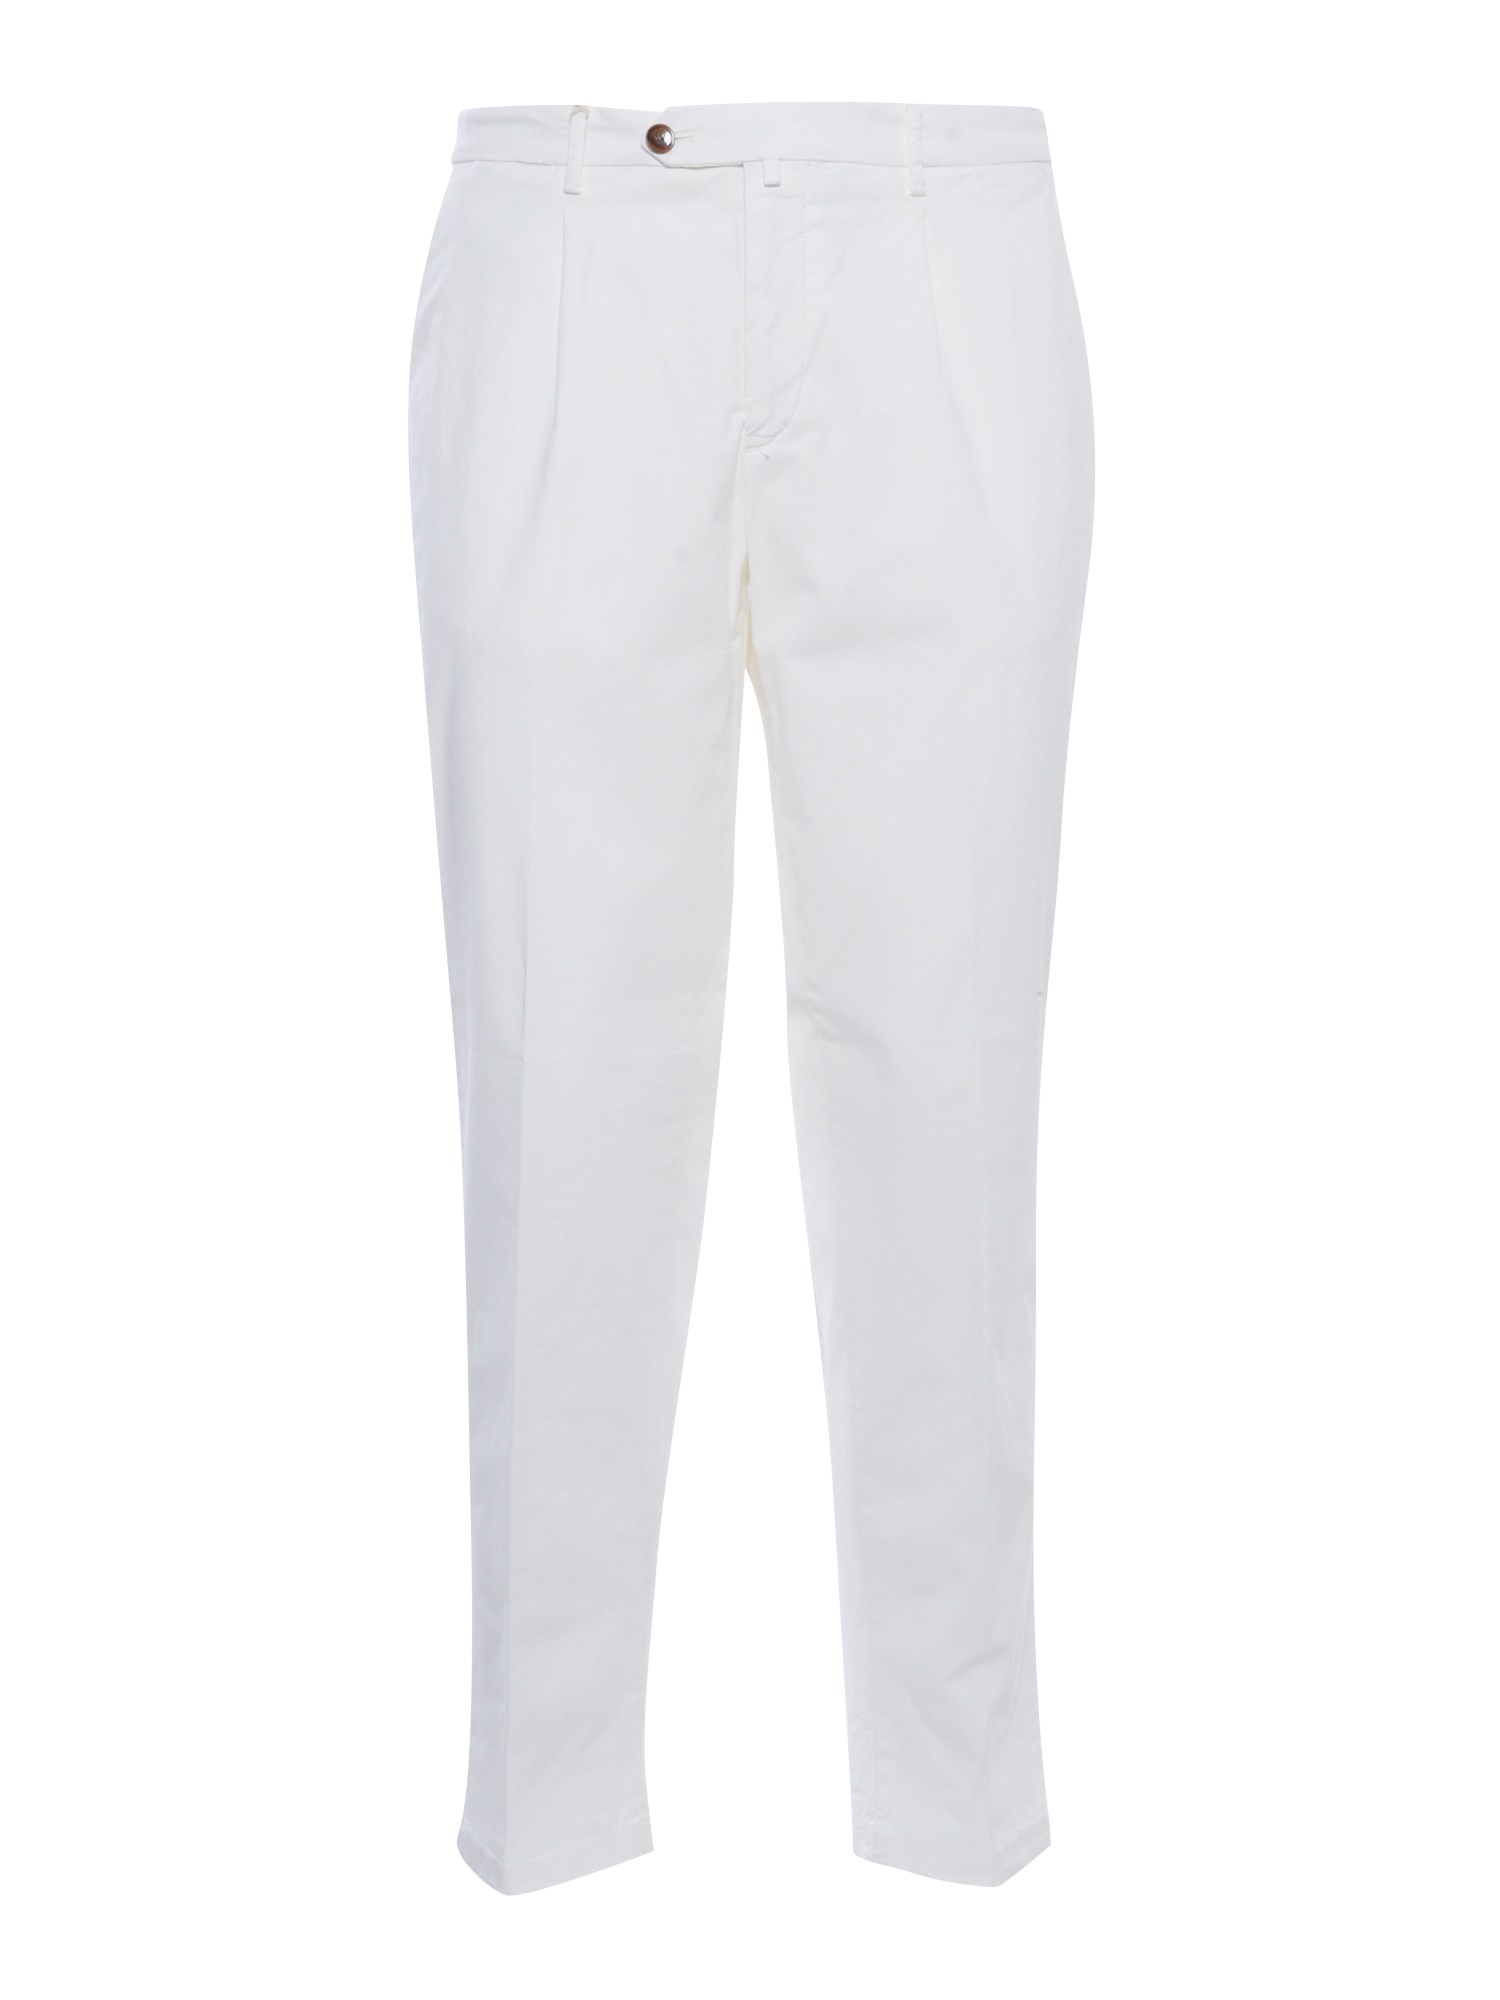 Briglia White Trousers